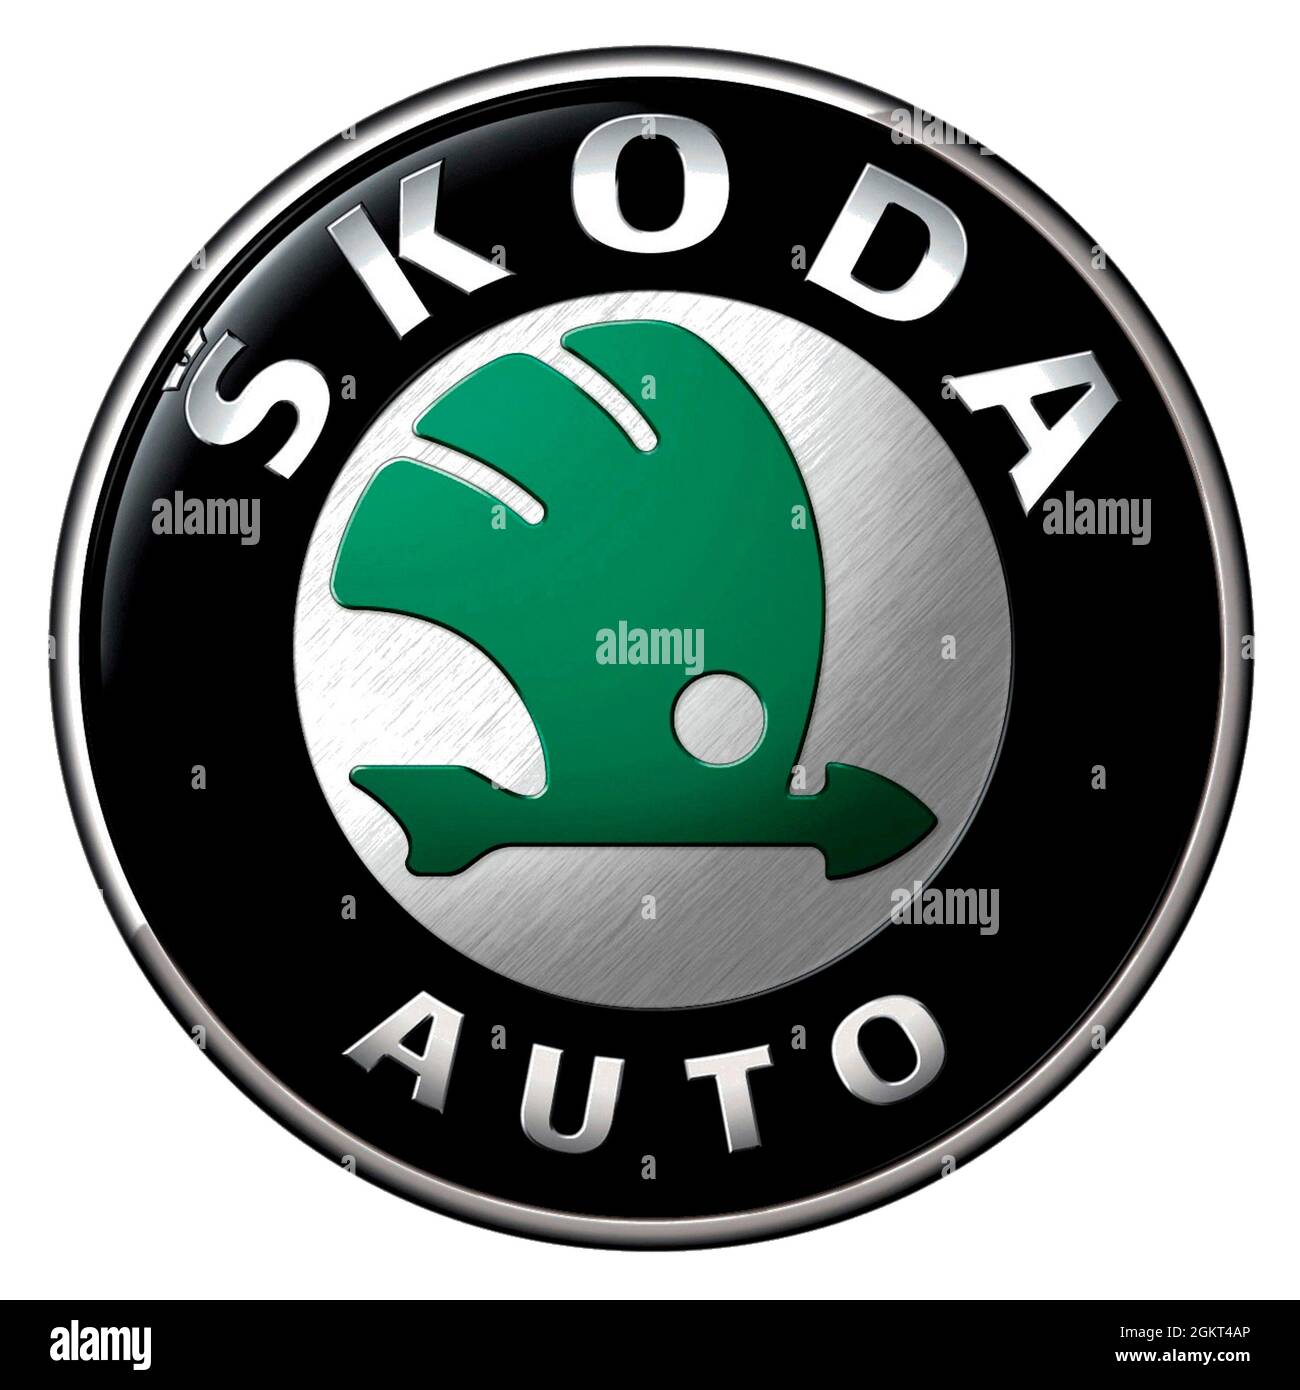 Logotipo de la empresa del fabricante checo de automóviles Skoda con sede en Mlada Boleslav - empresa filial del grupo alemán de fabricación de automóviles Volkswagen Foto de stock